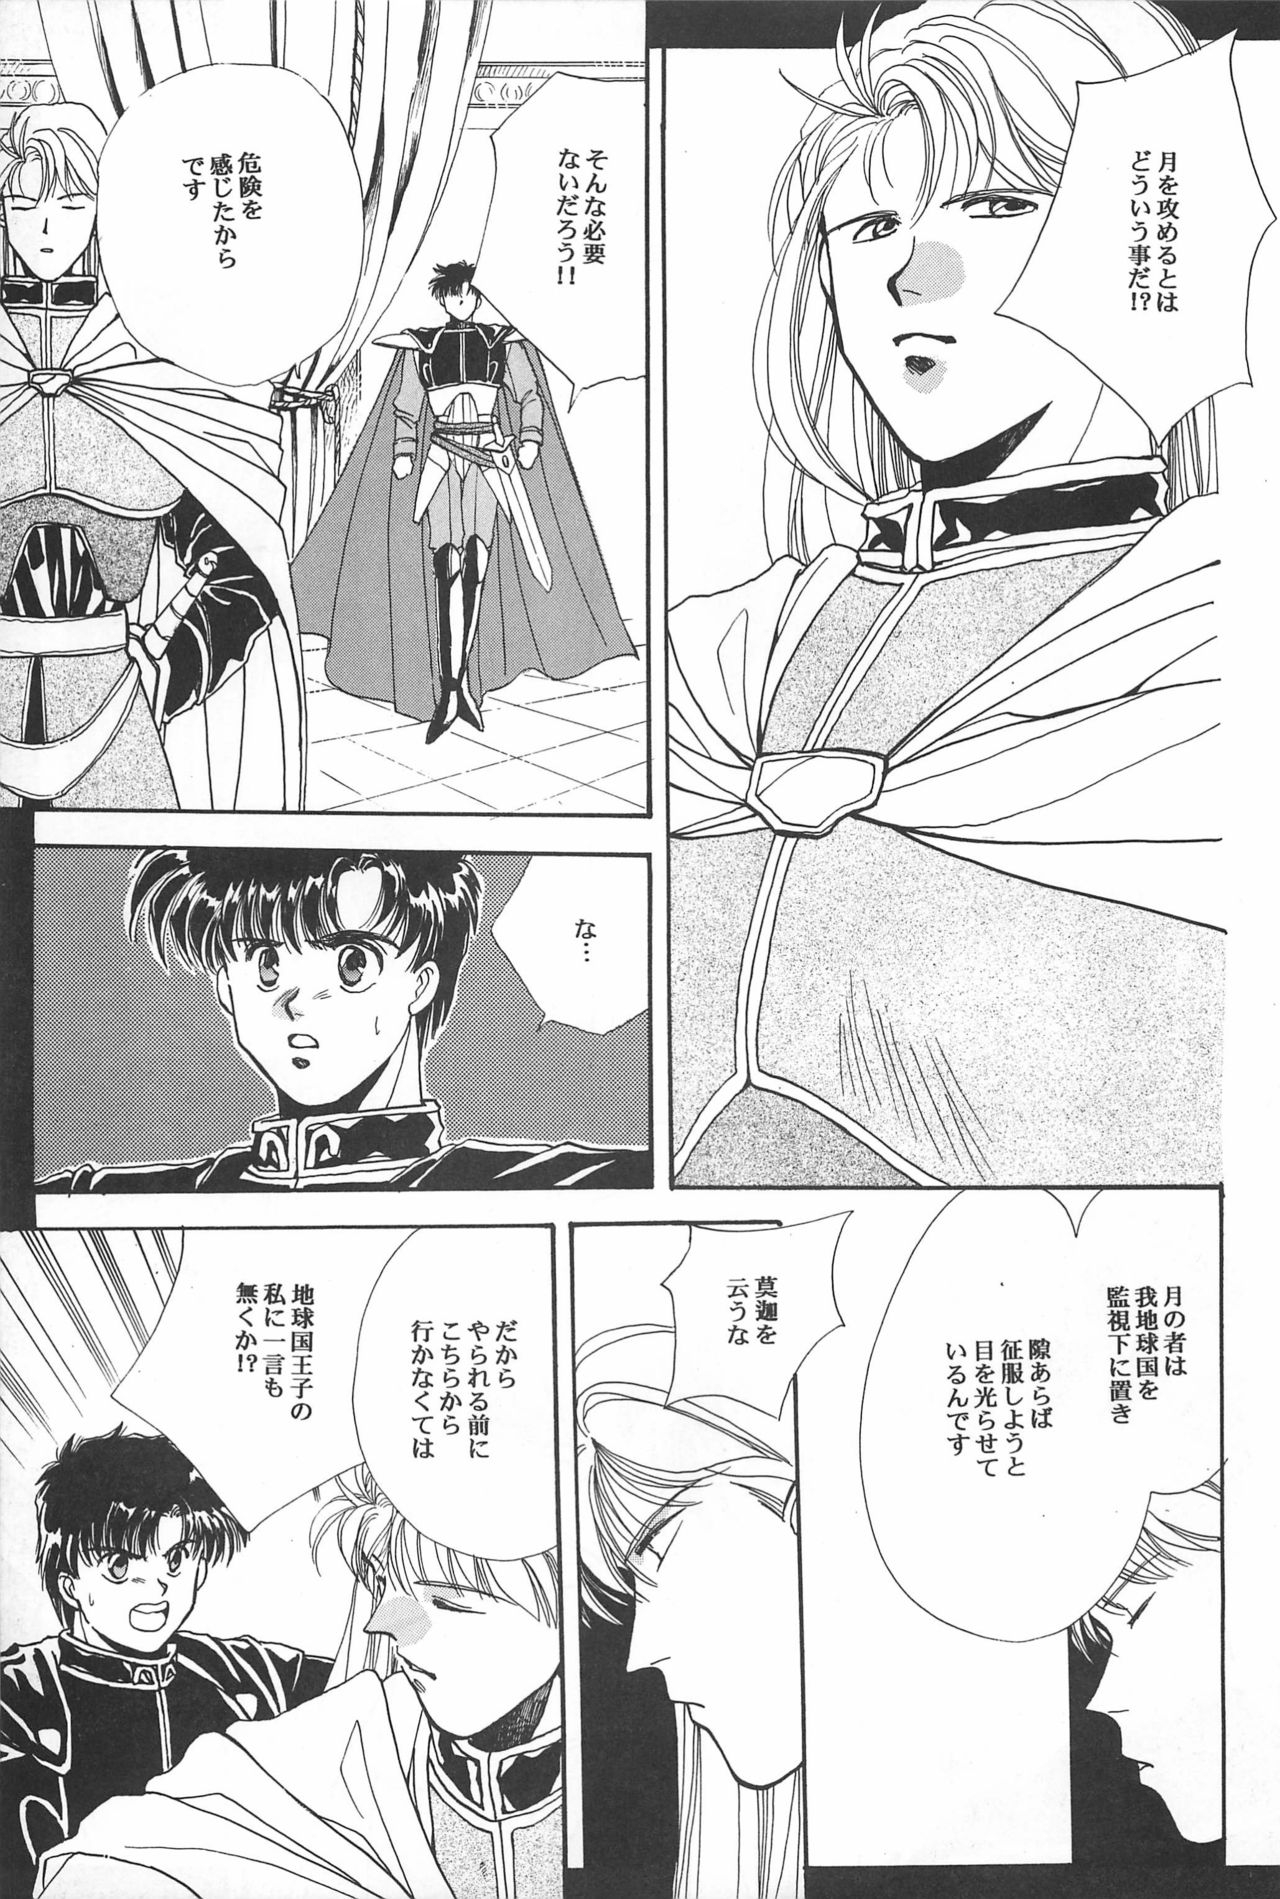 [Hello World (Muttri Moony)] Kaze no You ni Yume no You ni - Sailor Moon Collection (Sailor Moon) 50